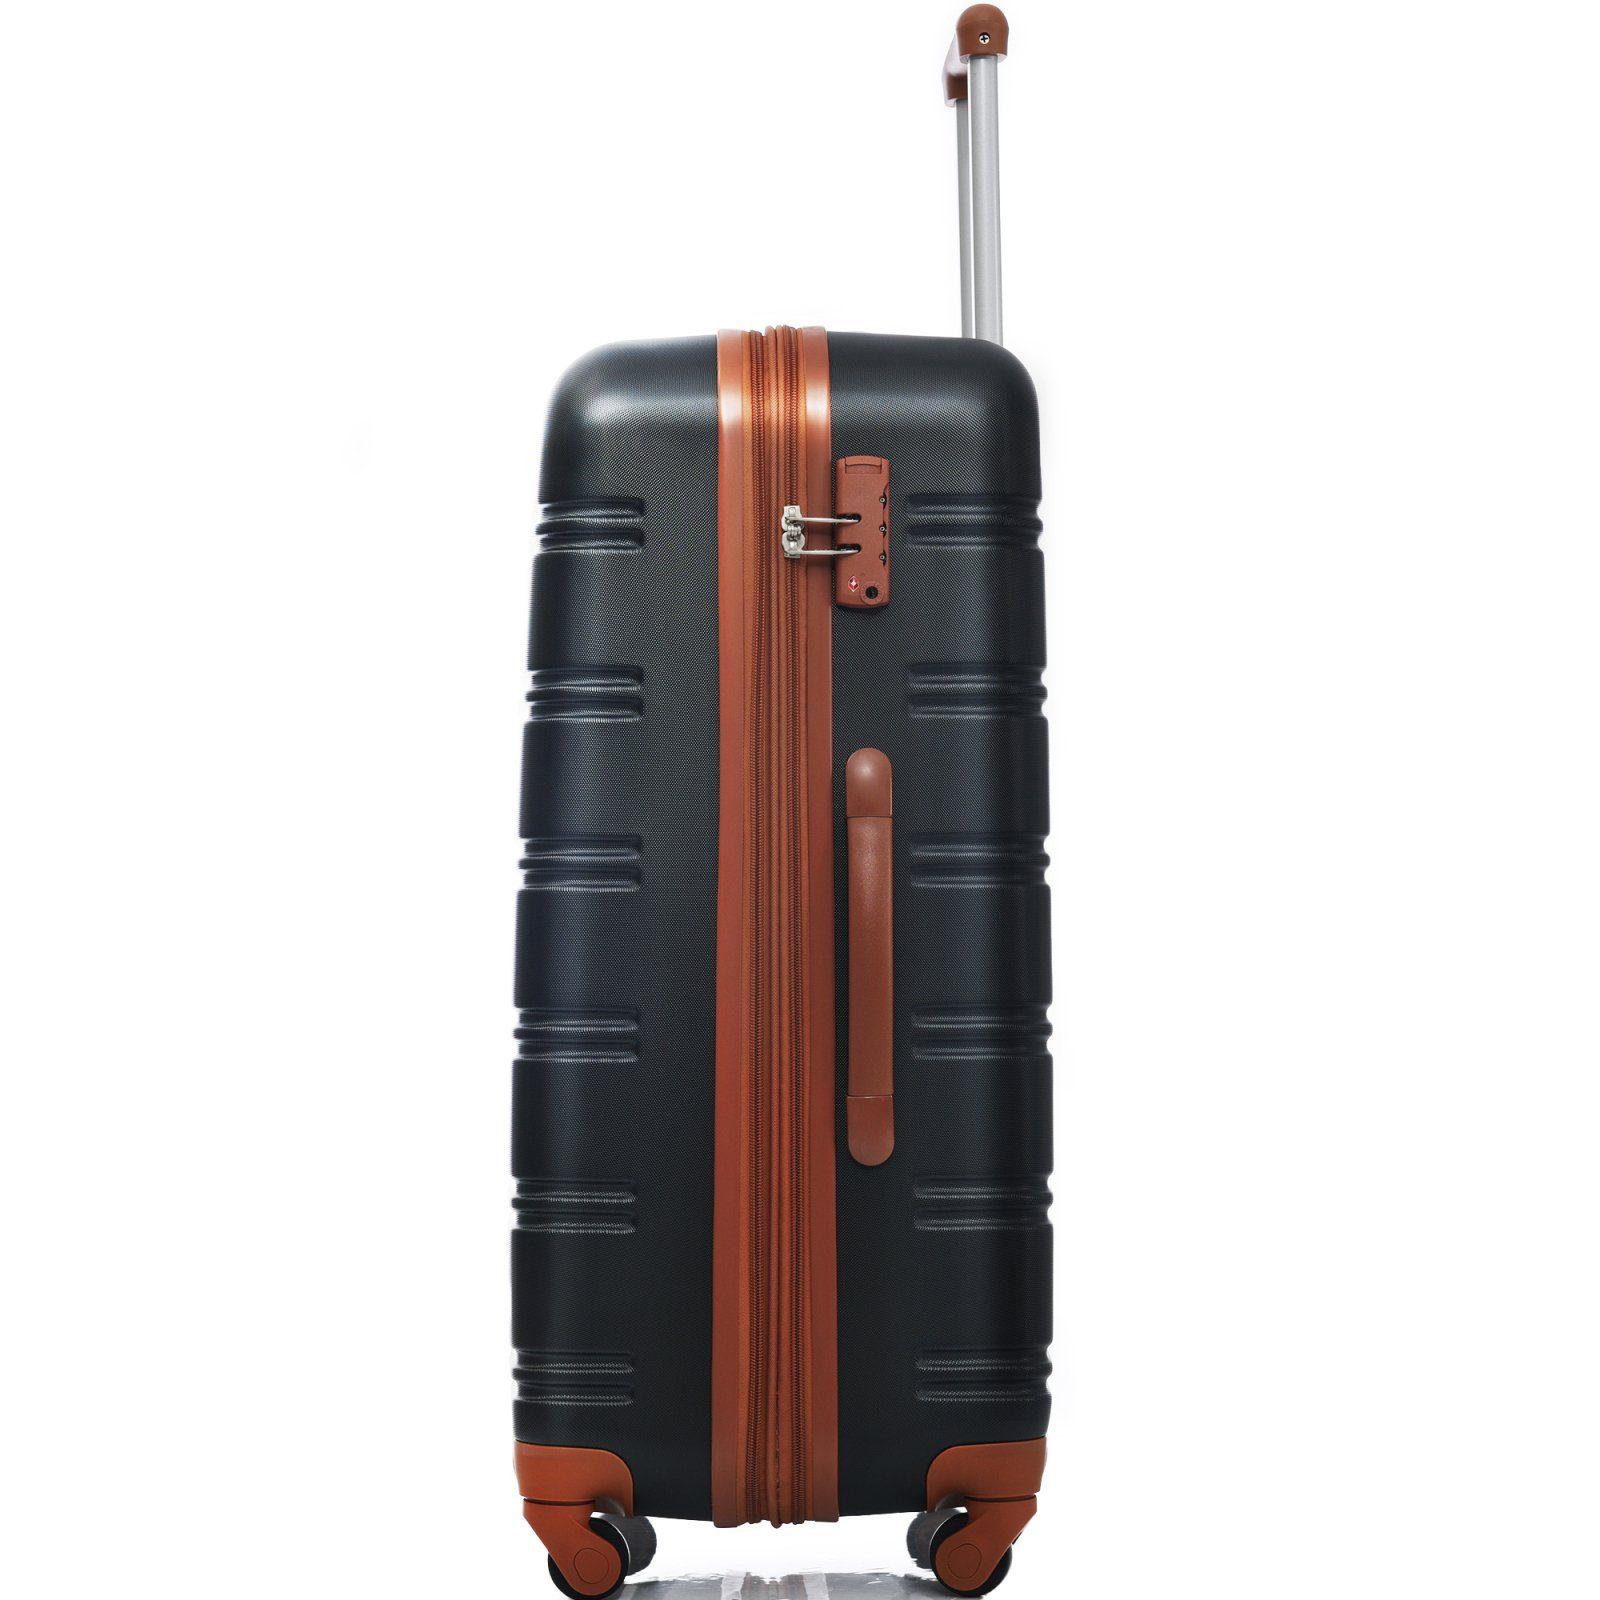 SEEZSSA Koffer Rollkoffer mit 4 Rolle schwarz+braun Handgepäck ABS-Material, 65x44.5x27.5cm , Rollkoffer aus